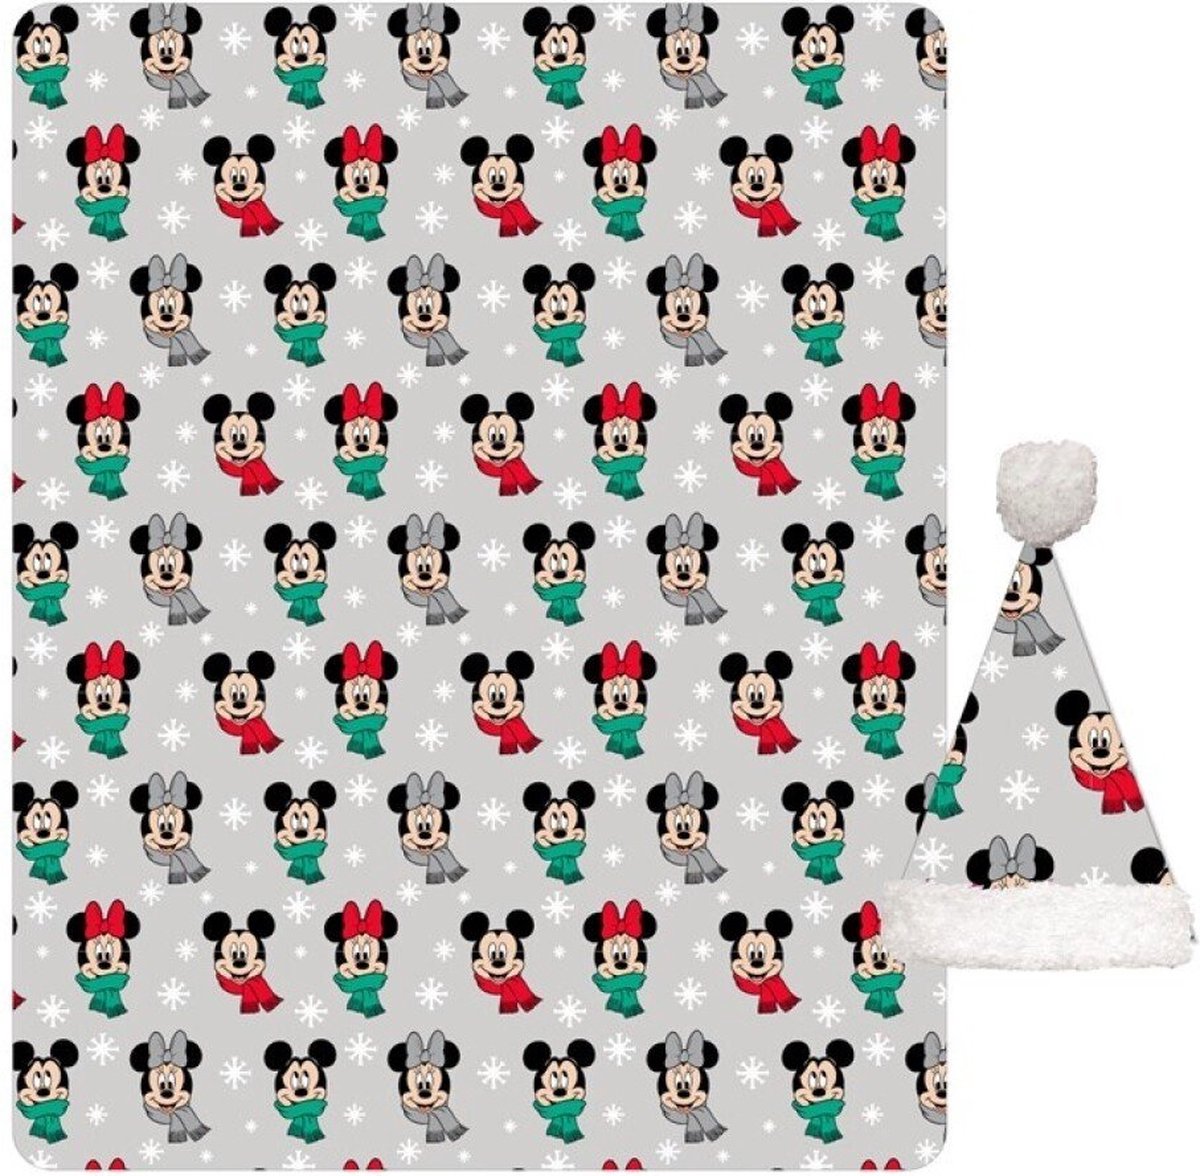 Plaid Couverture Polaire en Flanelle - Disney Mickey et Minnie